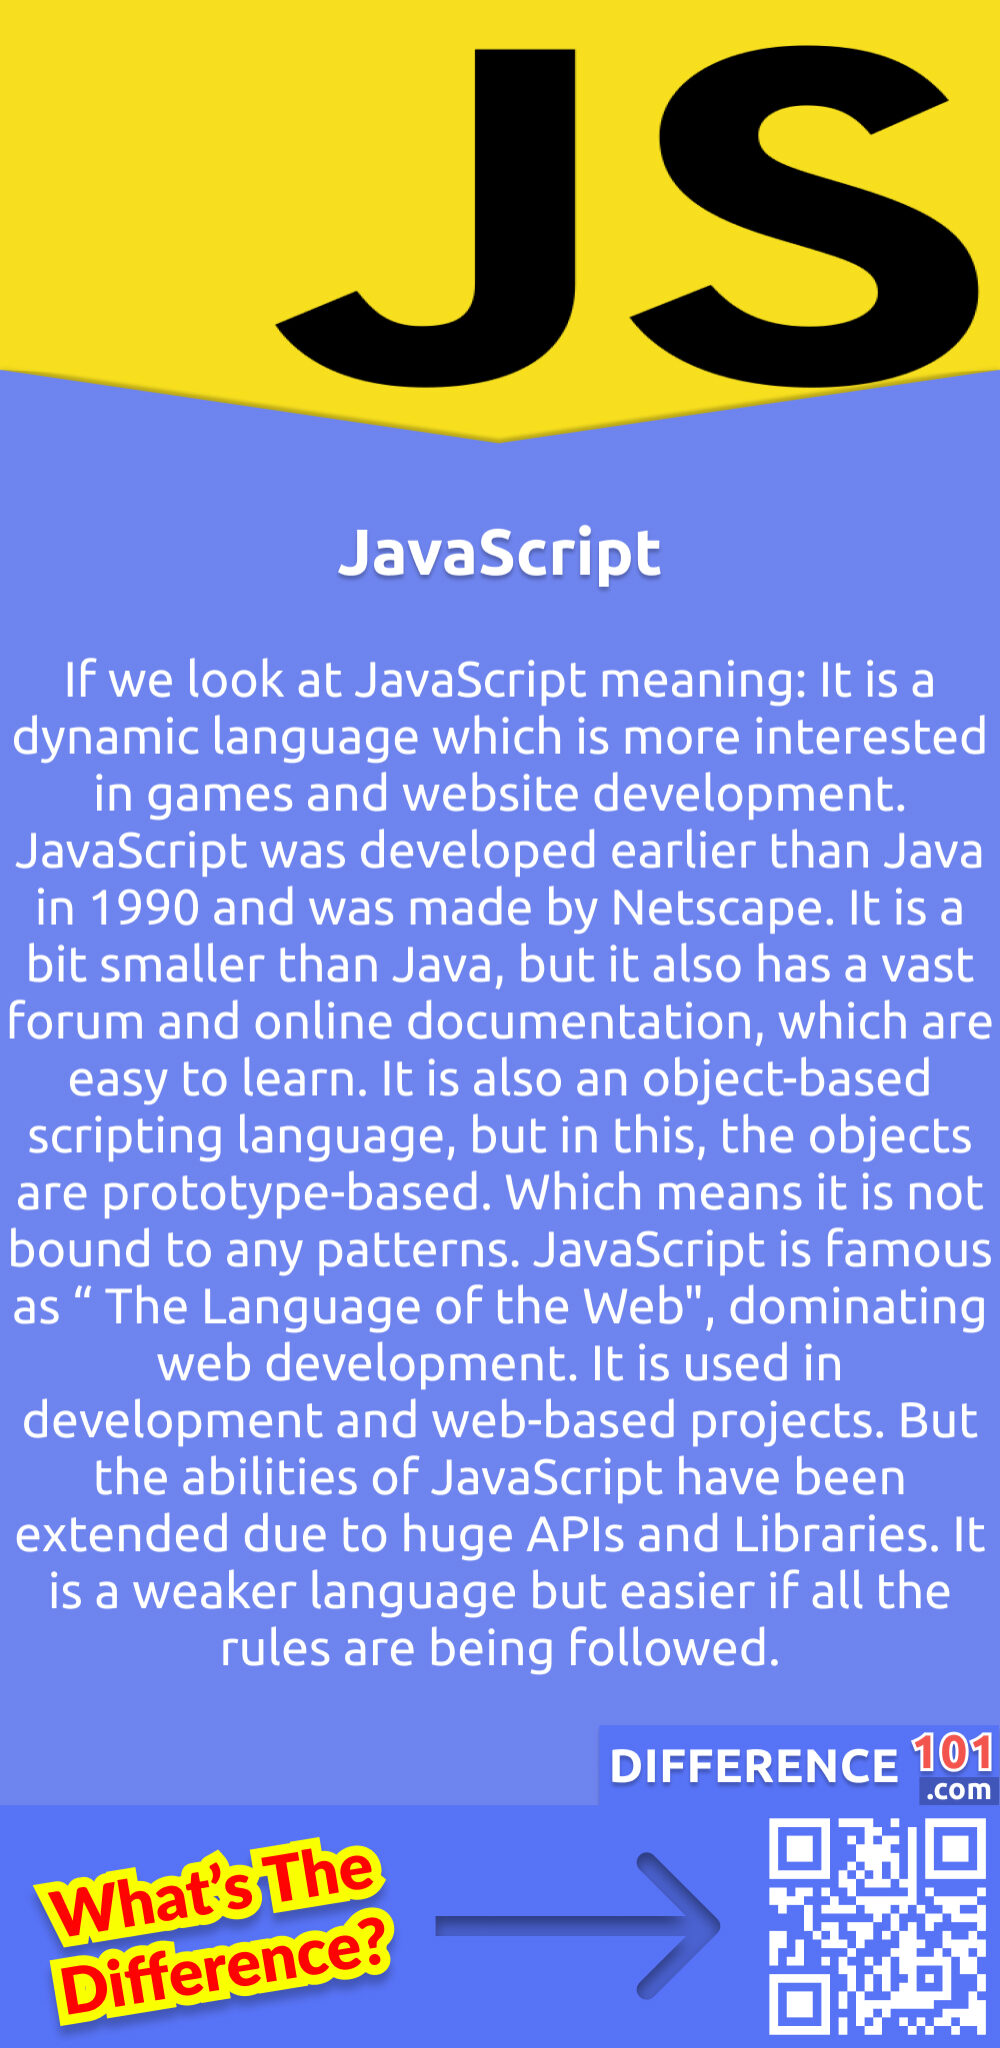 Was ist JavaScript? Wenn wir uns die Bedeutung von JavaScript ansehen: Es handelt sich um eine dynamische Sprache, die eher für Spiele und die Entwicklung von Websites geeignet ist. JavaScript wurde früher als Java im Jahr 1990 entwickelt und stammt von Netscape. Es ist etwas kleiner als Java, aber es hat auch ein großes Forum und eine Online-Dokumentation, die leicht zu erlernen sind. Es handelt sich ebenfalls um eine objektbasierte Skriptsprache, bei der die Objekte jedoch prototypisch aufgebaut sind. Das heißt, sie ist nicht an bestimmte Muster gebunden. JavaScript ist als "The Language of the Webu0022" bekannt und dominiert die Webentwicklung. Es wird bei der Entwicklung und bei webbasierten Projekten eingesetzt. Aber die Fähigkeiten von JavaScript wurden durch umfangreiche APIs und Bibliotheken erweitert. Es ist eine schwächere Sprache, aber einfacher, wenn alle Regeln befolgt werden.